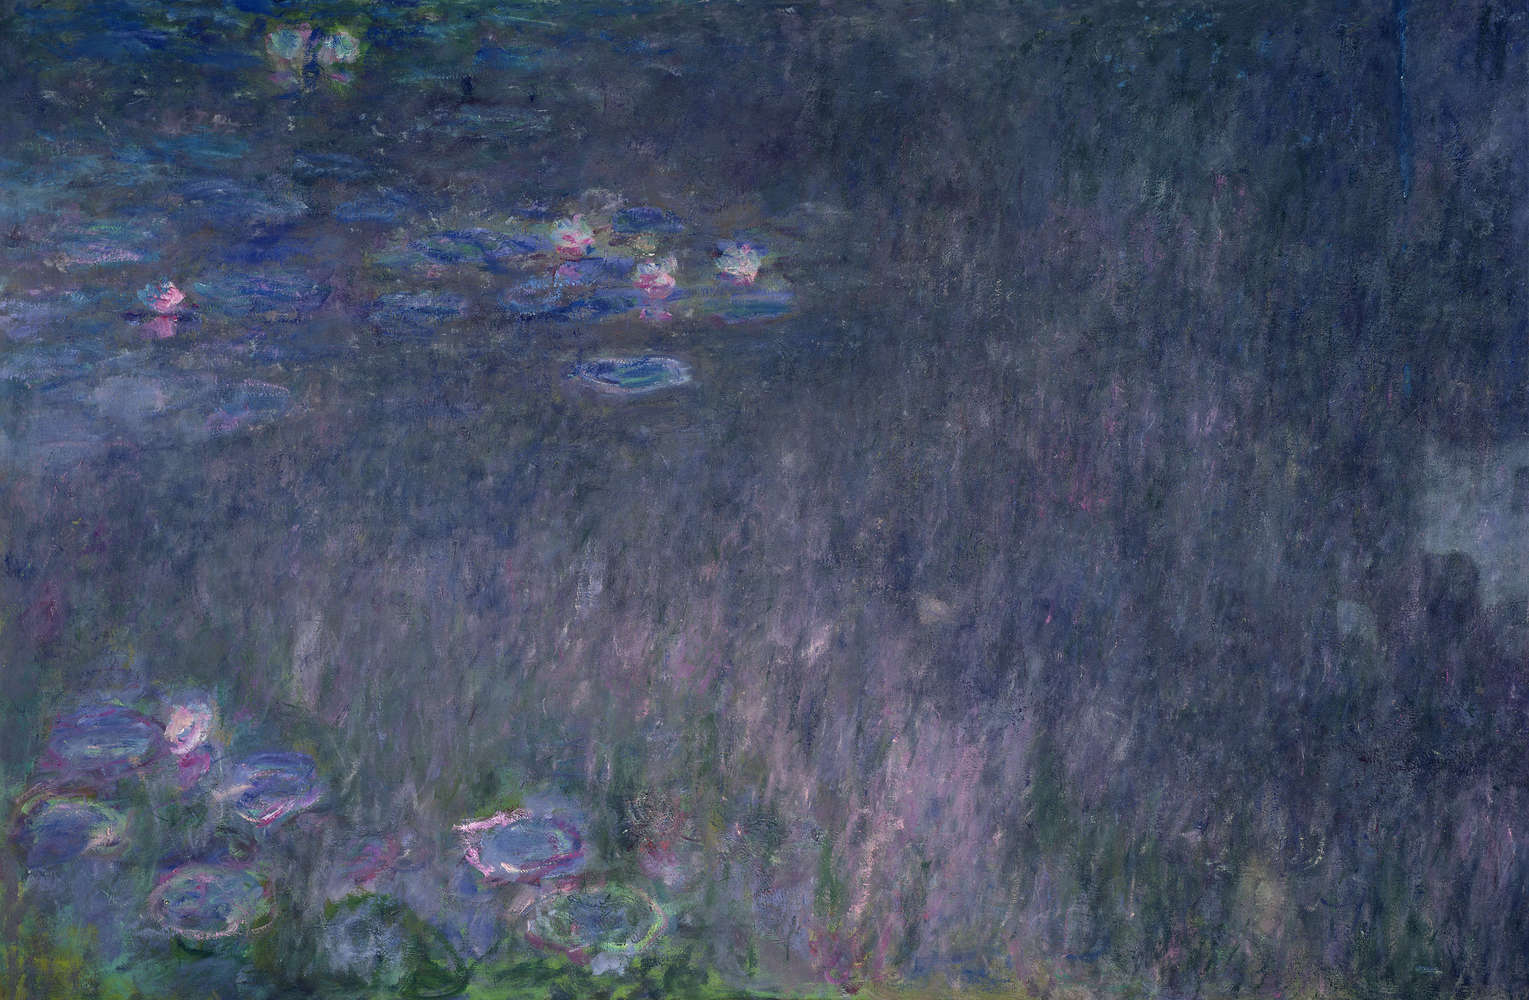             Waterlelies: weerspiegeling van de bomen" muurschildering van Claude Monet
        